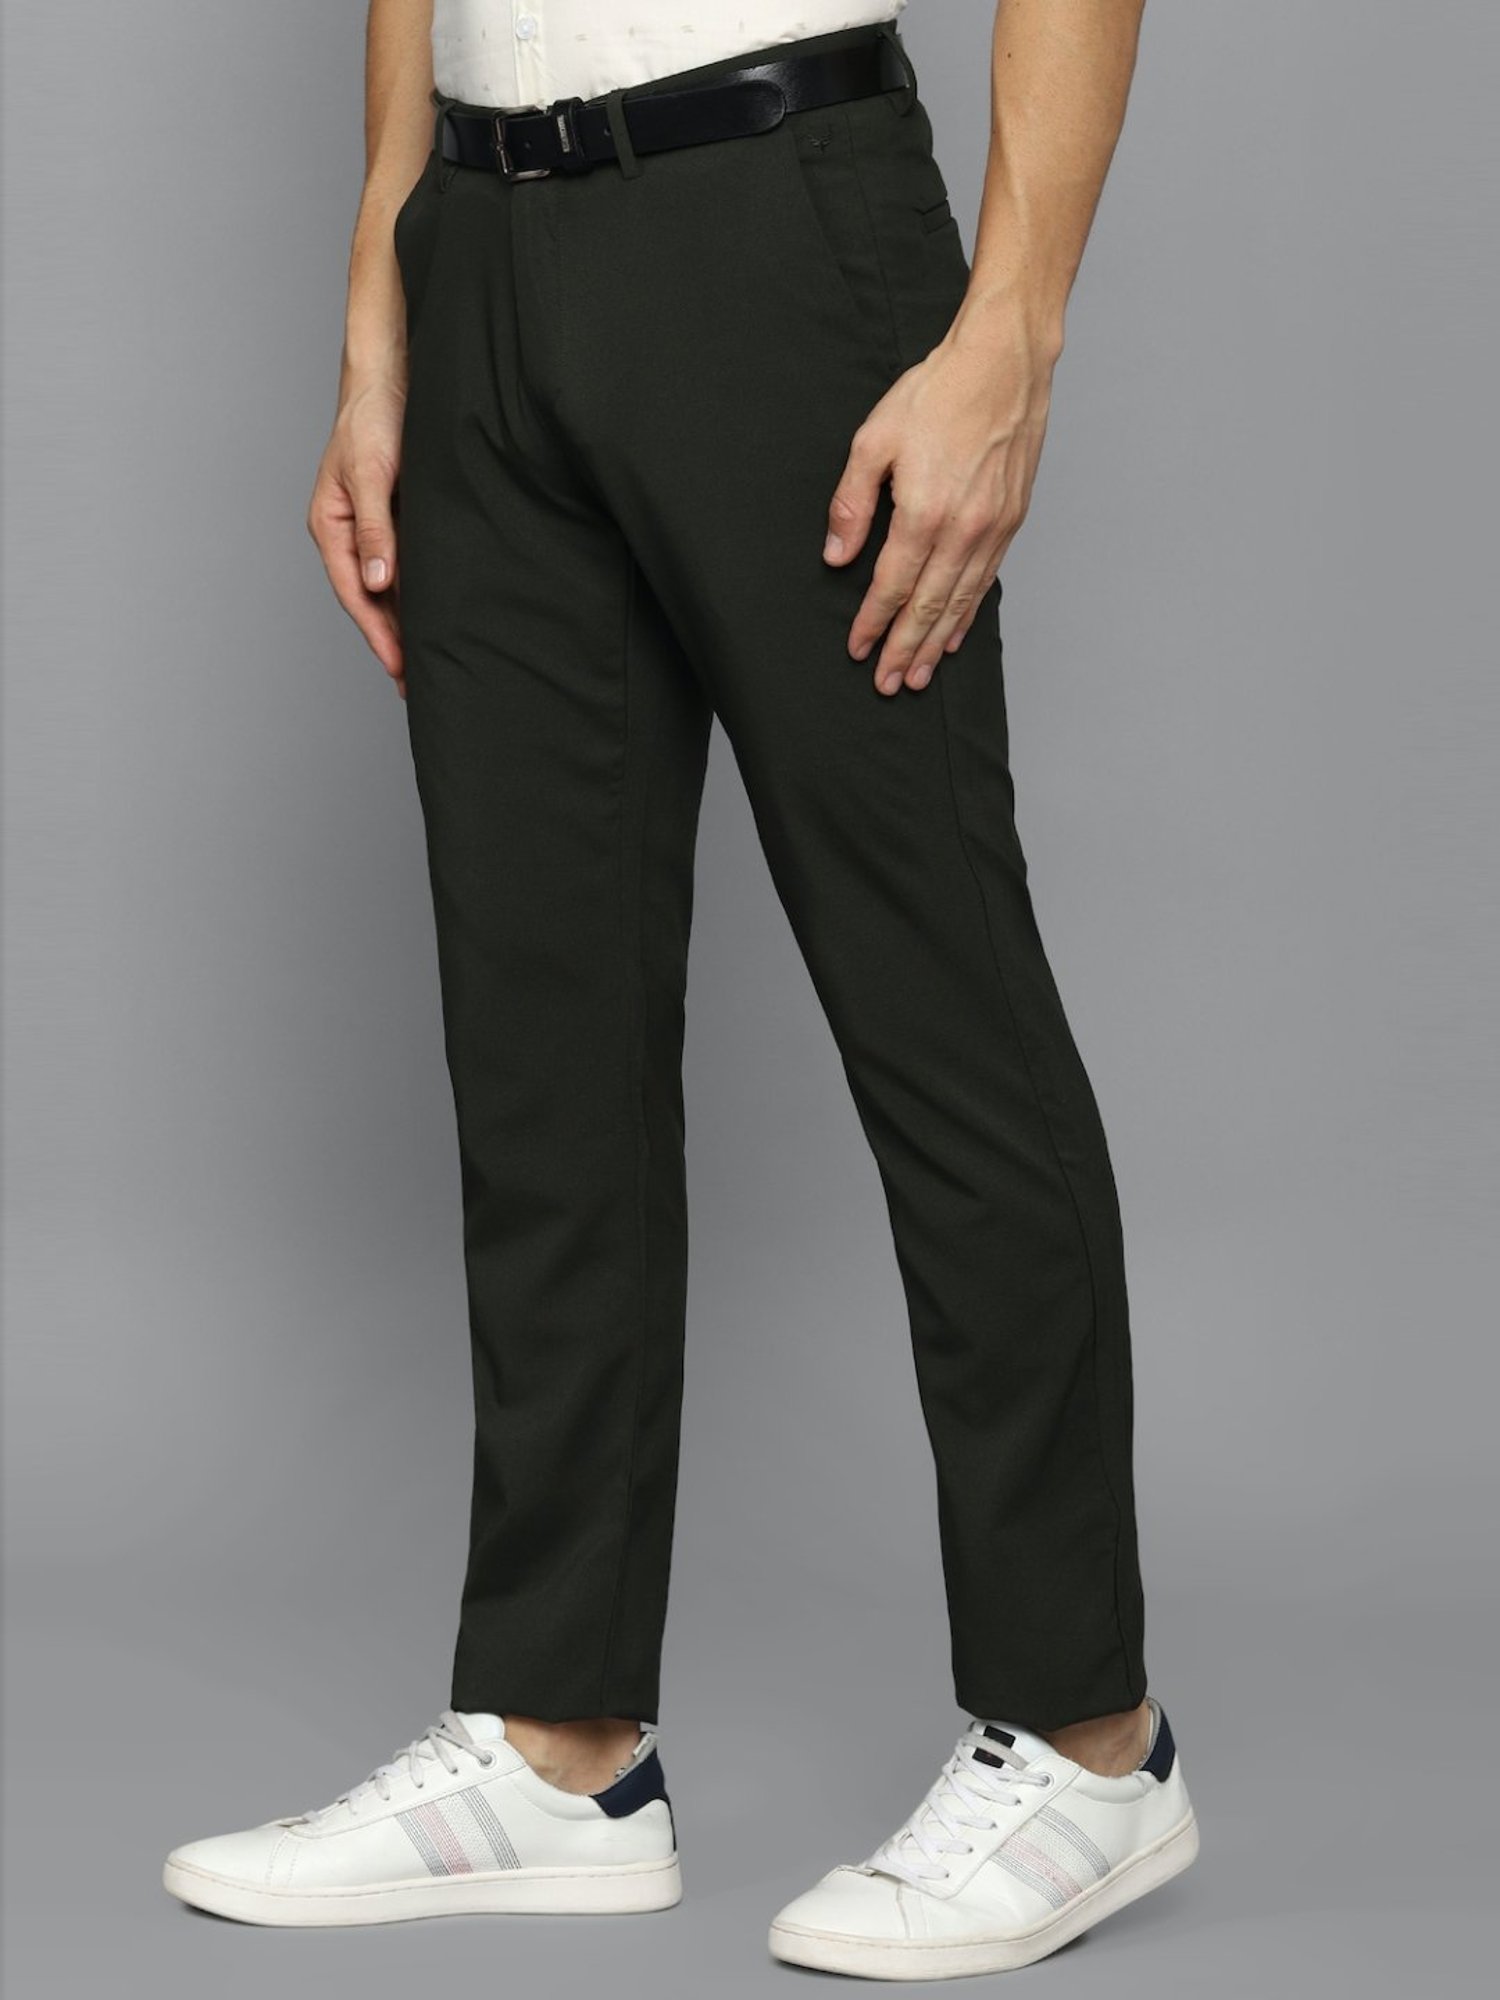 Buy Men Black Solid Skinny Fit Trousers Online - 776298 | Van Heusen